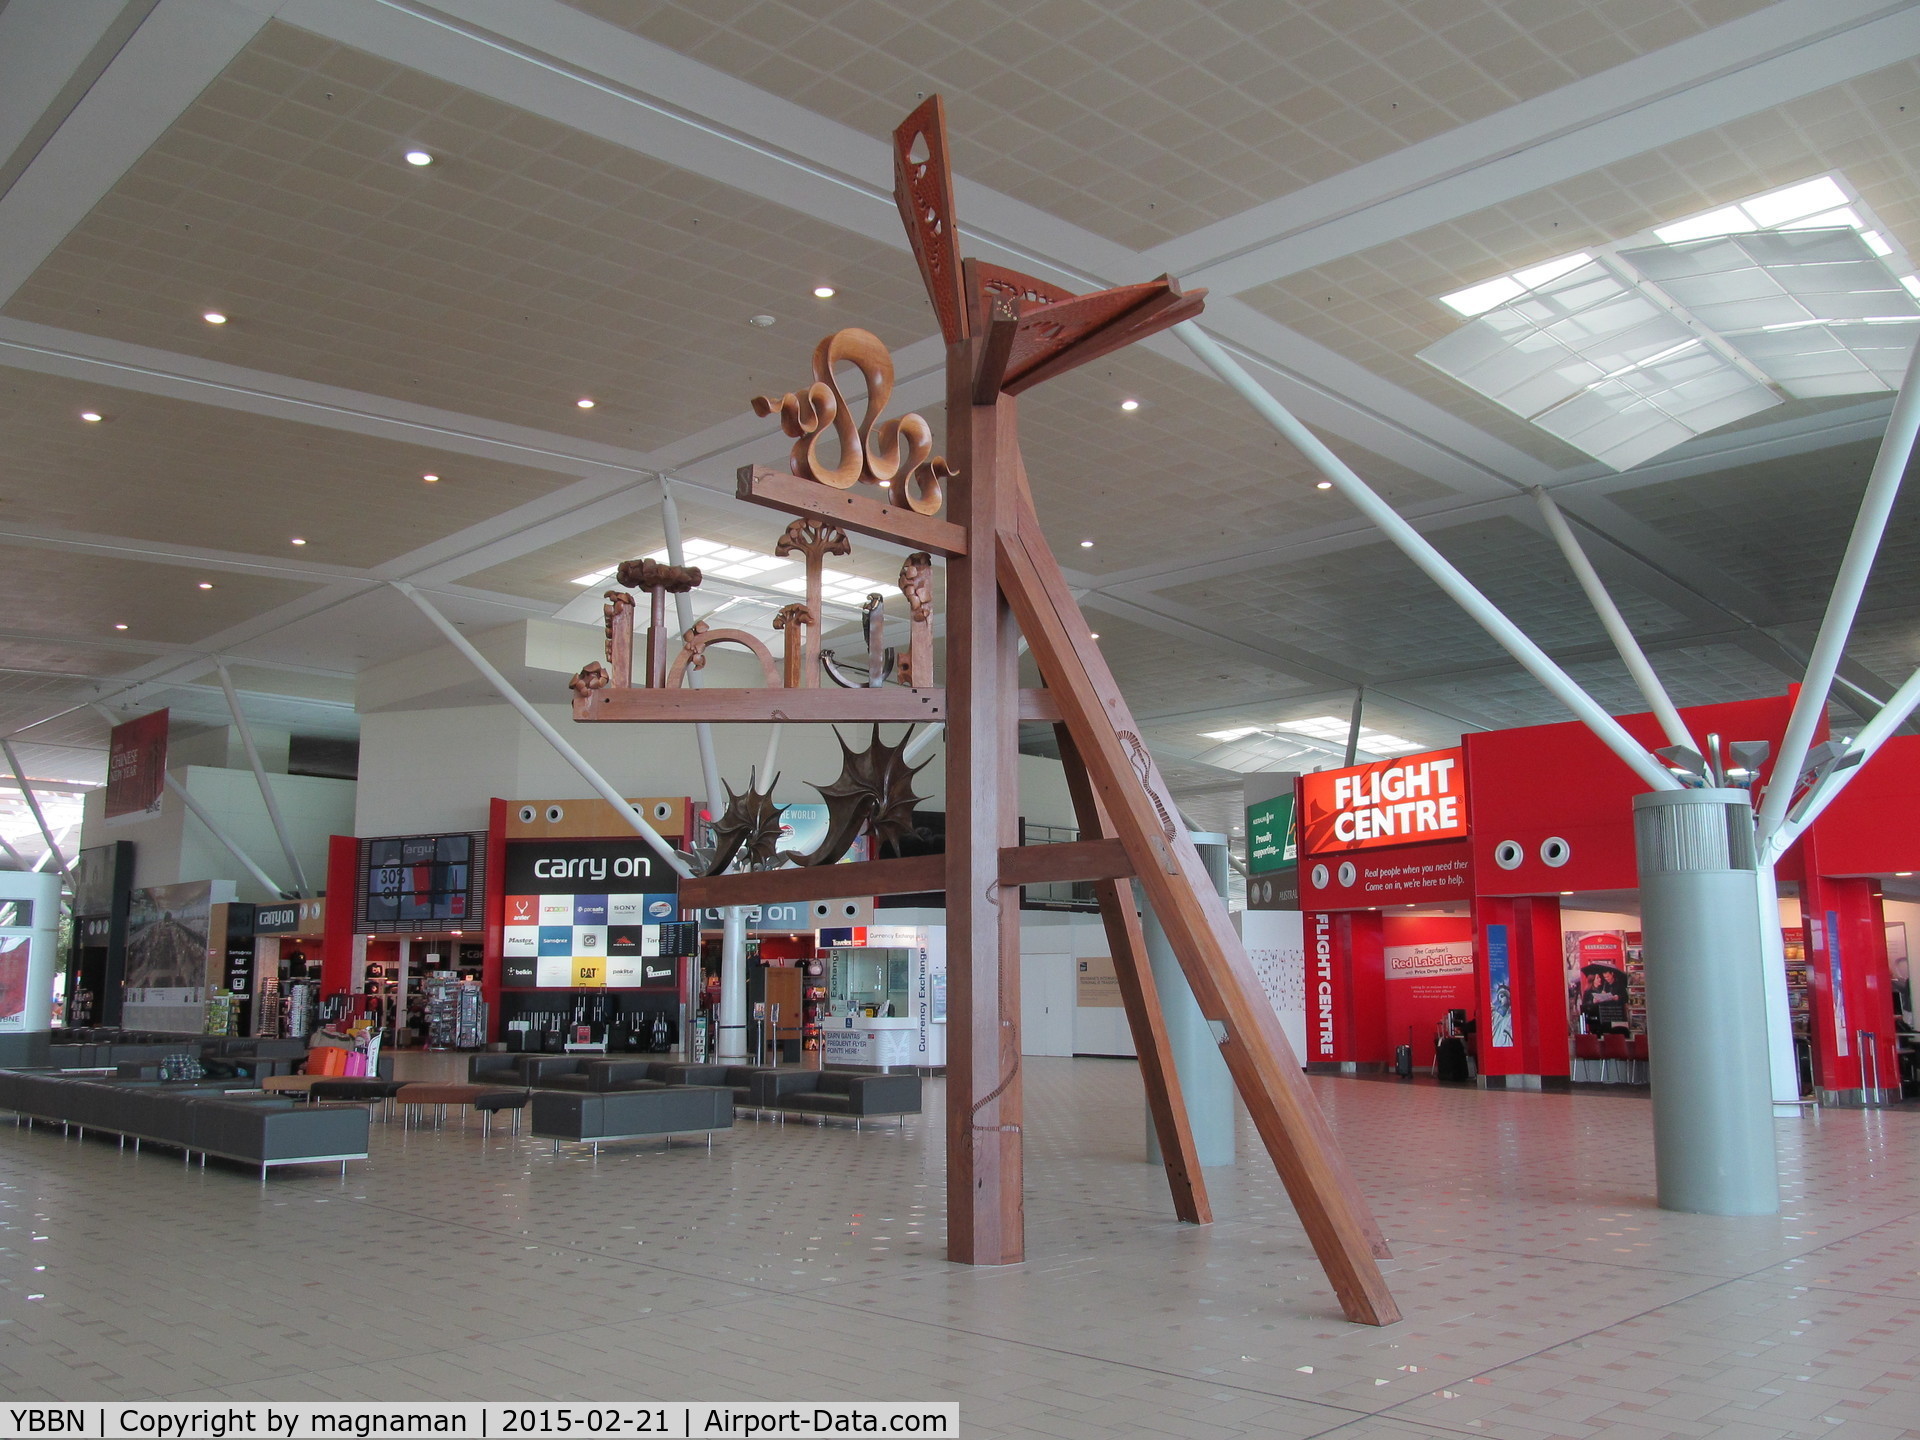 Brisbane International Airport, Brisbane, Queensland Australia (YBBN) - nice art piece inside international terminal - check in level